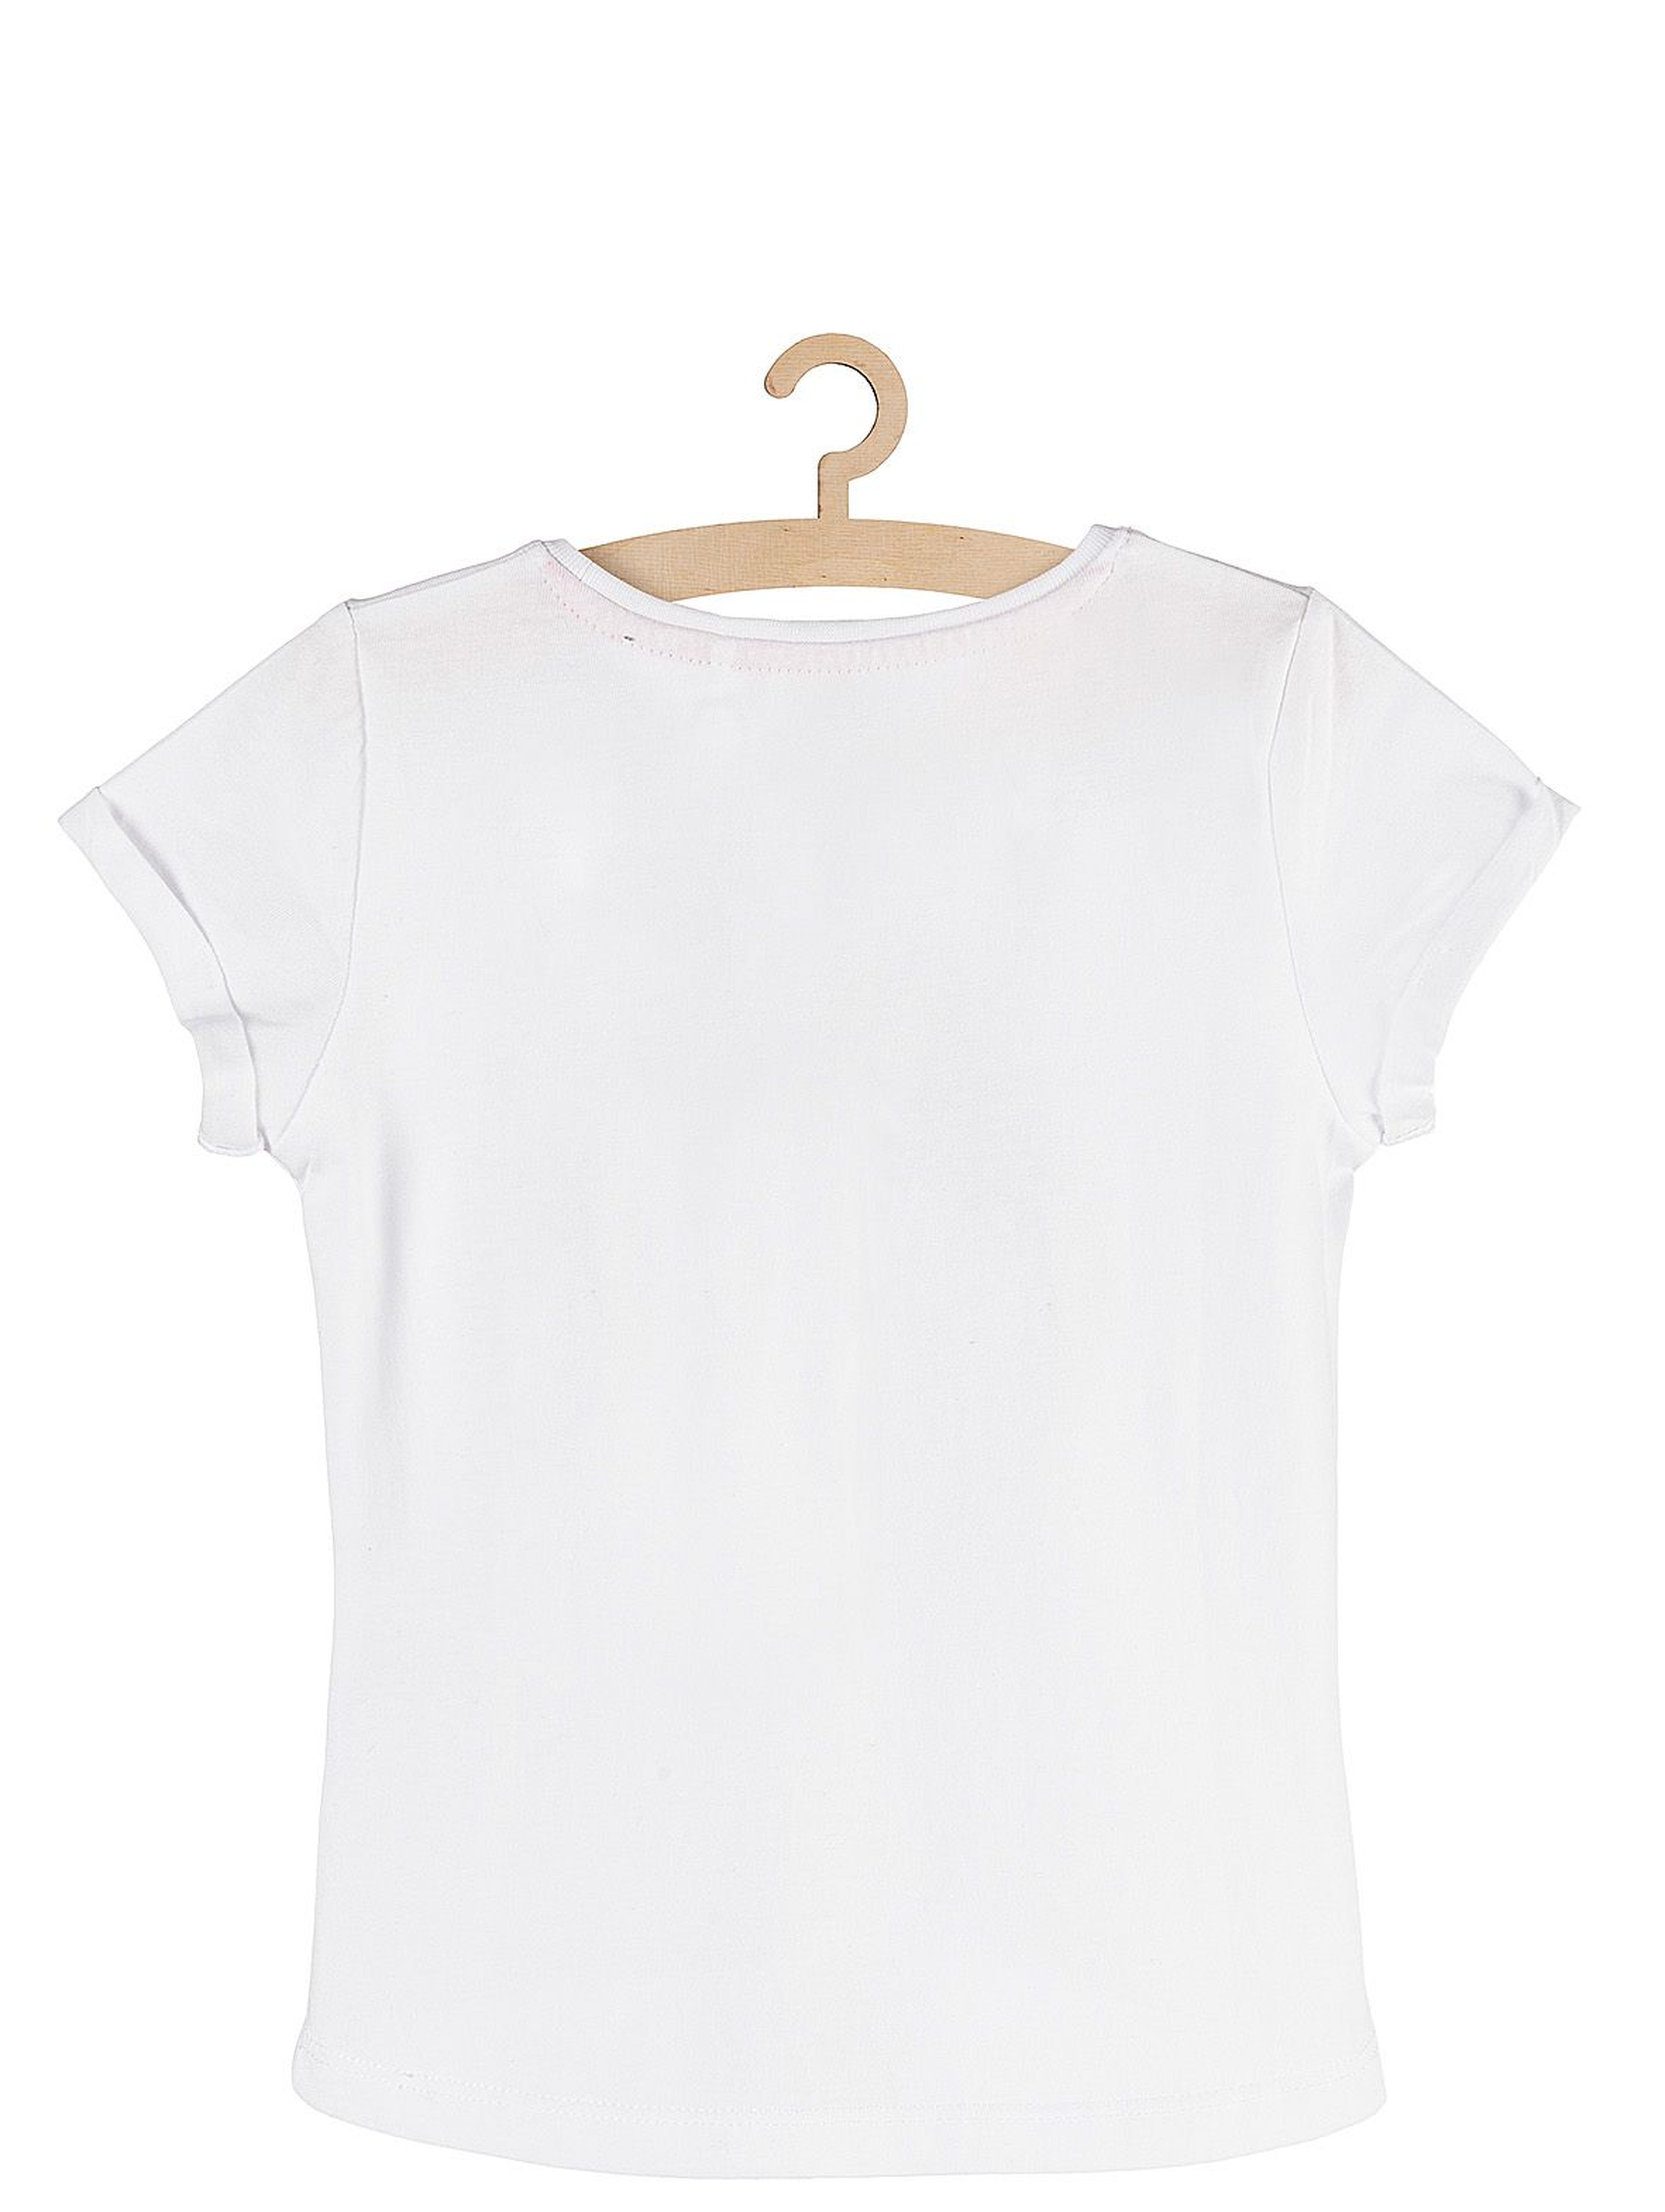 T-shirt dziewczęcy biały z jednorożcem